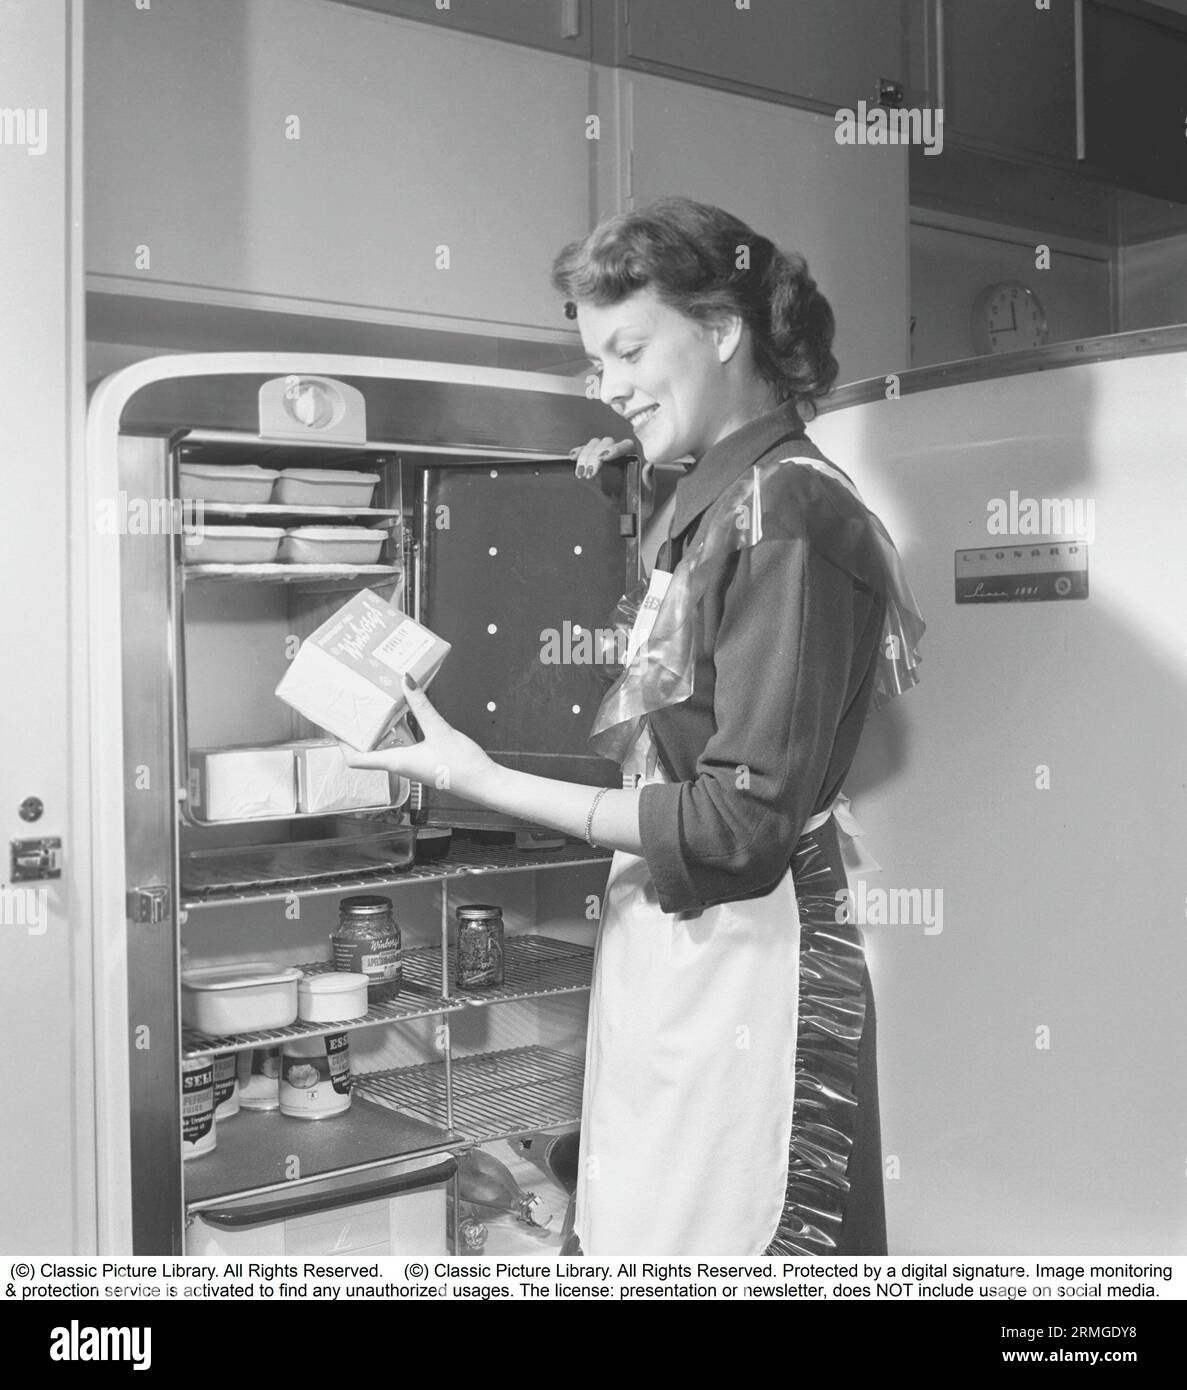 In cucina anni '1950 All'interno di una cucina e di una giovane donna in piedi al frigiratore Leonard con la porta aperta, che mostra le lattine e le bottiglie di cibo diverso in piedi sugli scaffali. Nel frigorifero è integrato un armadietto di congelamento separato, una caratteristica abbastanza nuova in questo momento. Indossa un grembiule di plastica. È Haide Göransson, 1928-2008, modella e attrice. Svezia 1950 Kristoffersson rif AU22-10 Foto Stock